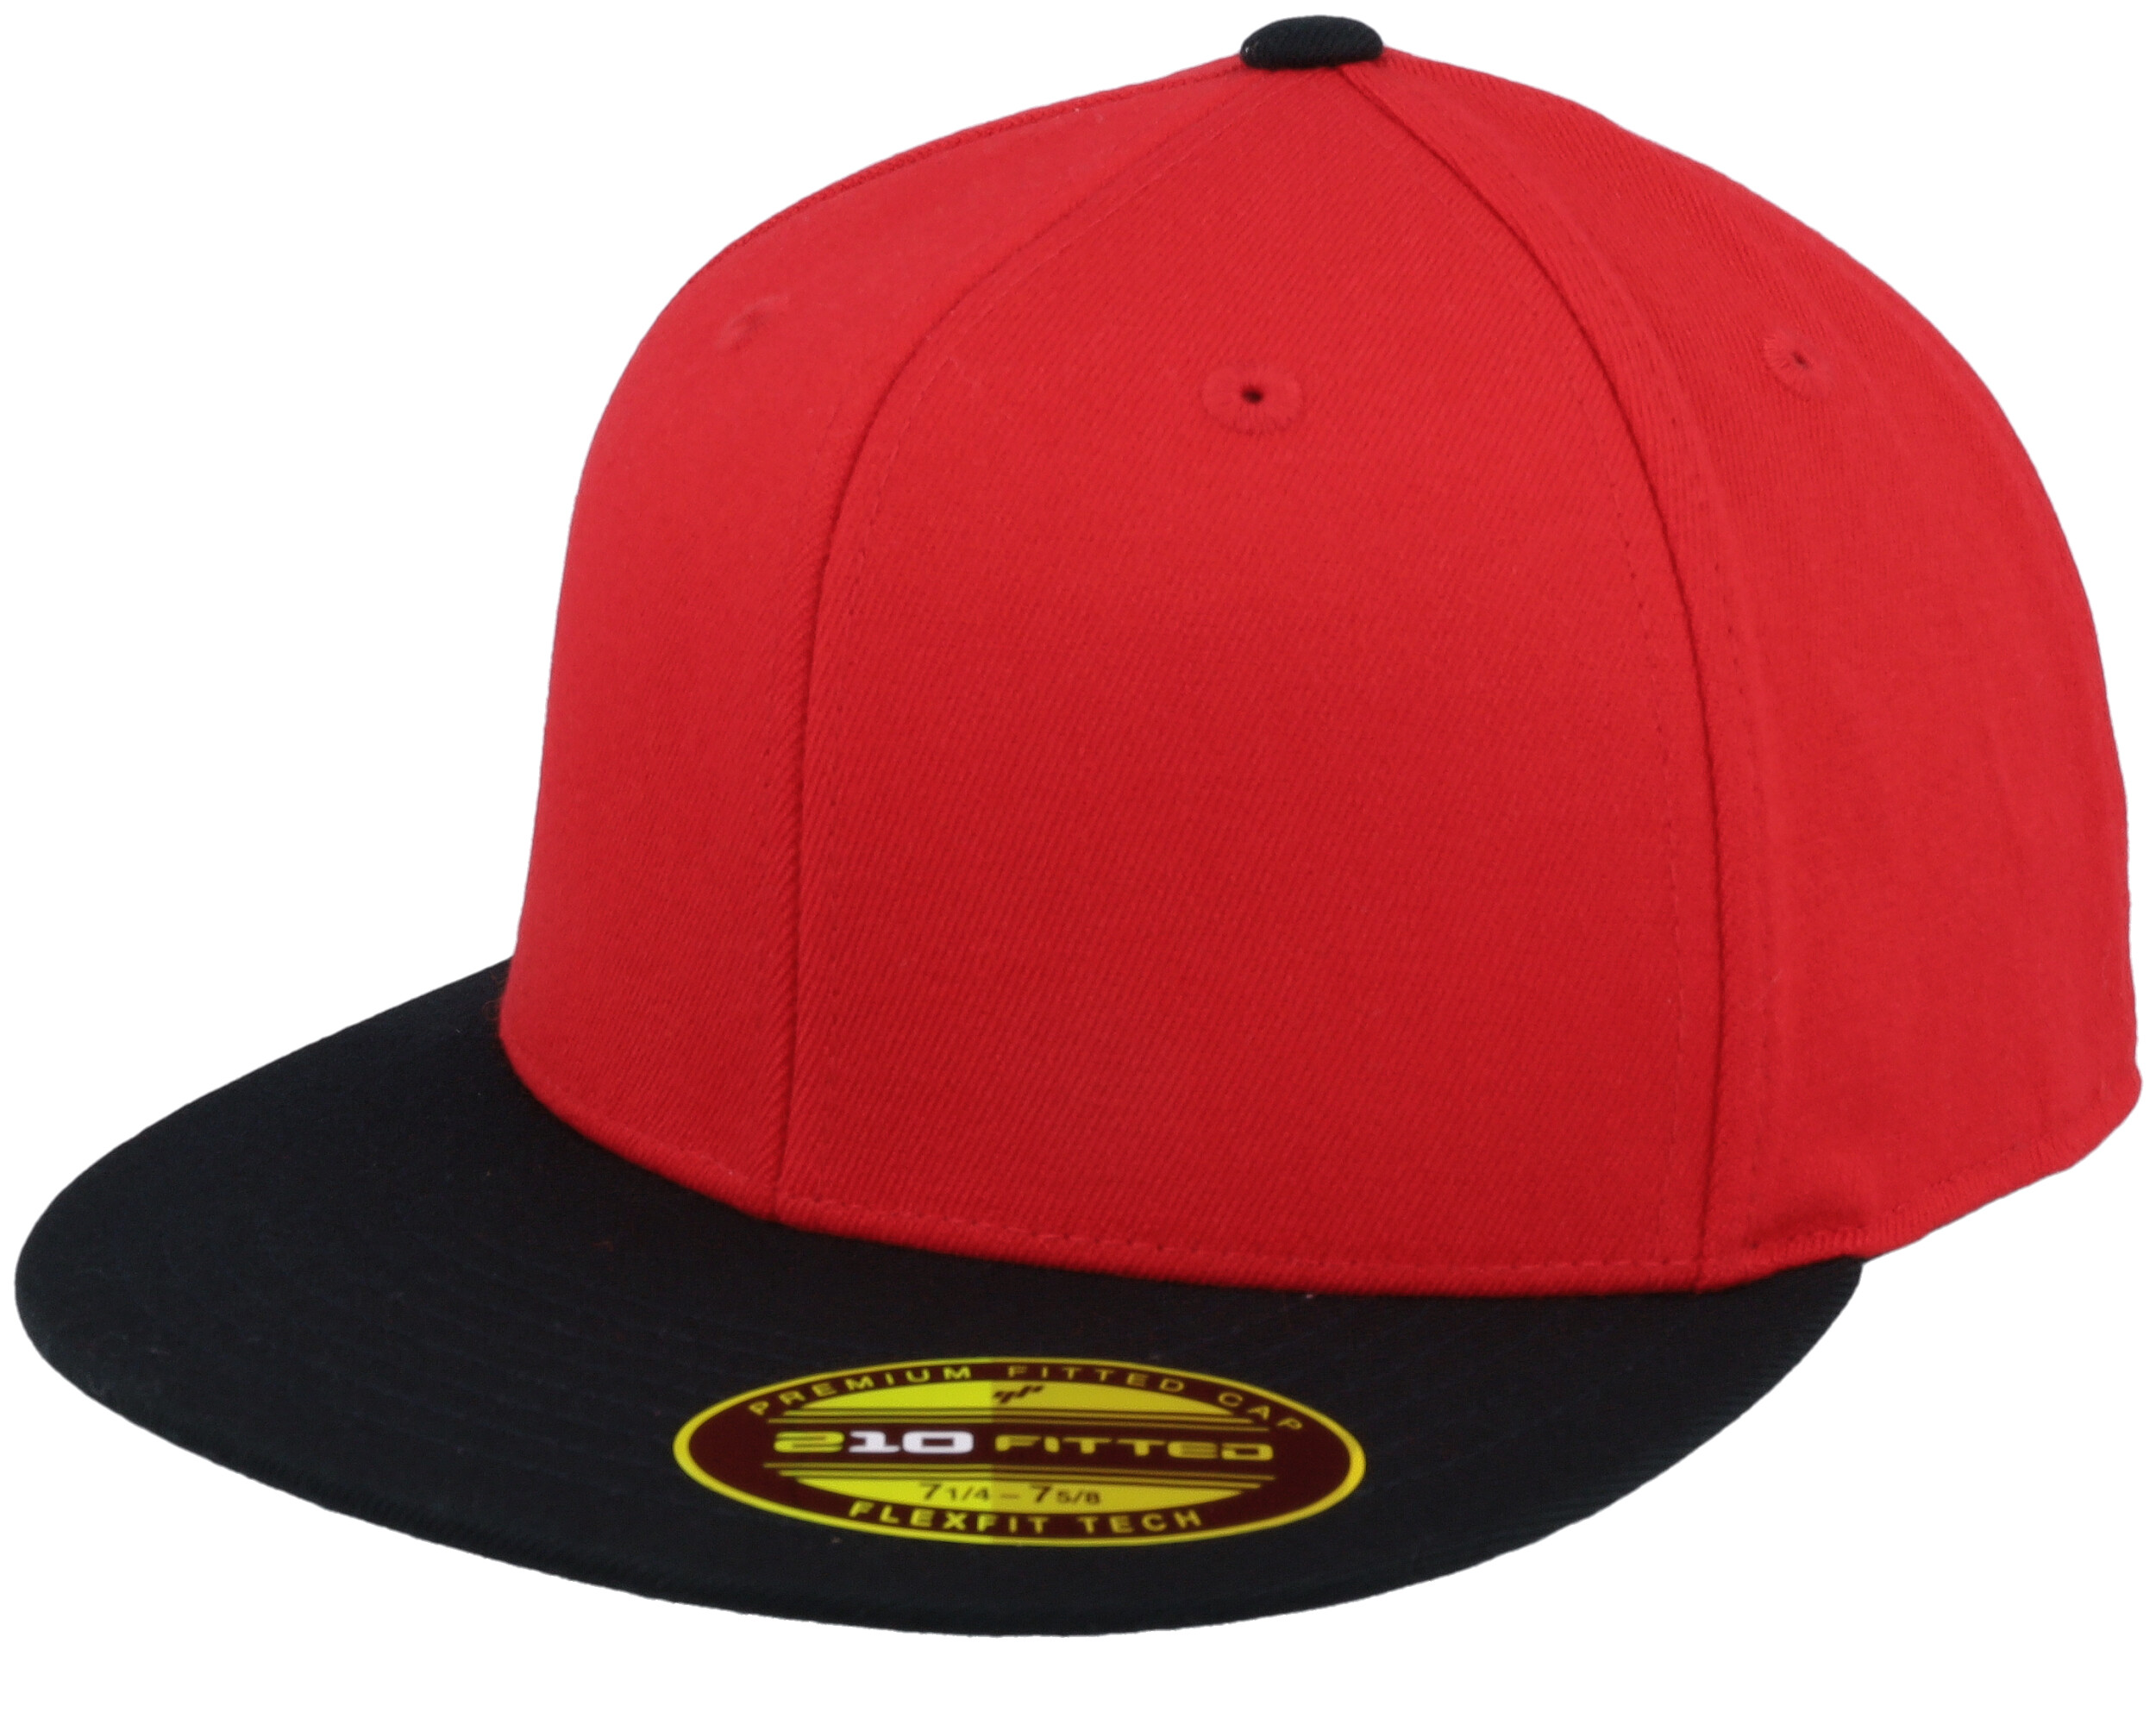 Premium 210 2-Tone Red/Black Flexfit - Fitted cap